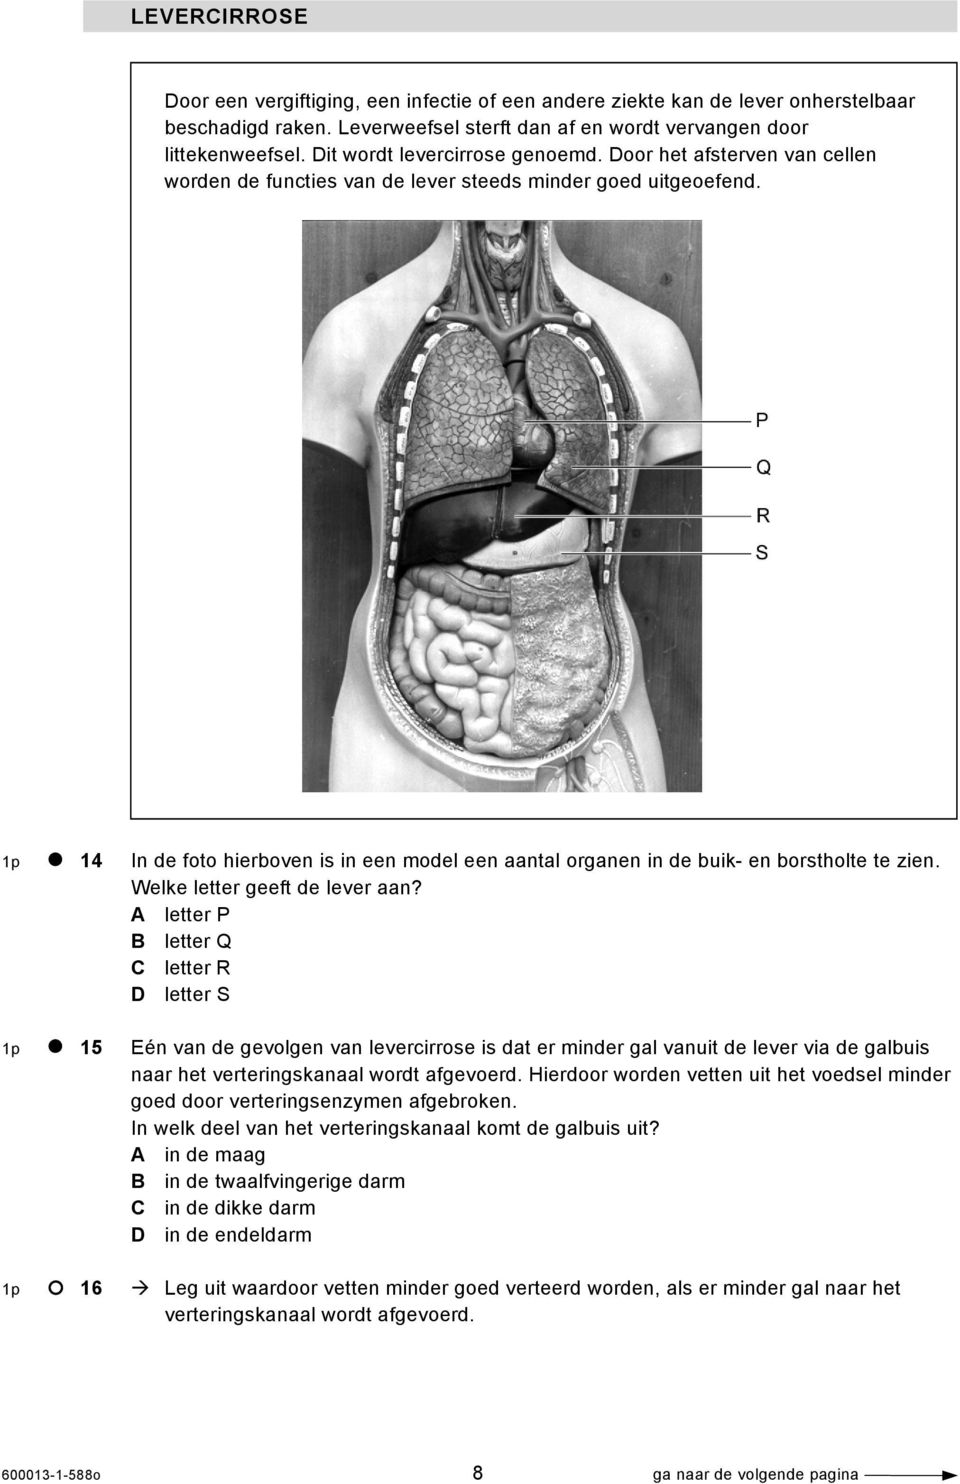 1p 14 In de foto hierboven is in een model een aantal organen in de buik- en borstholte te zien. Welke letter geeft de lever aan?